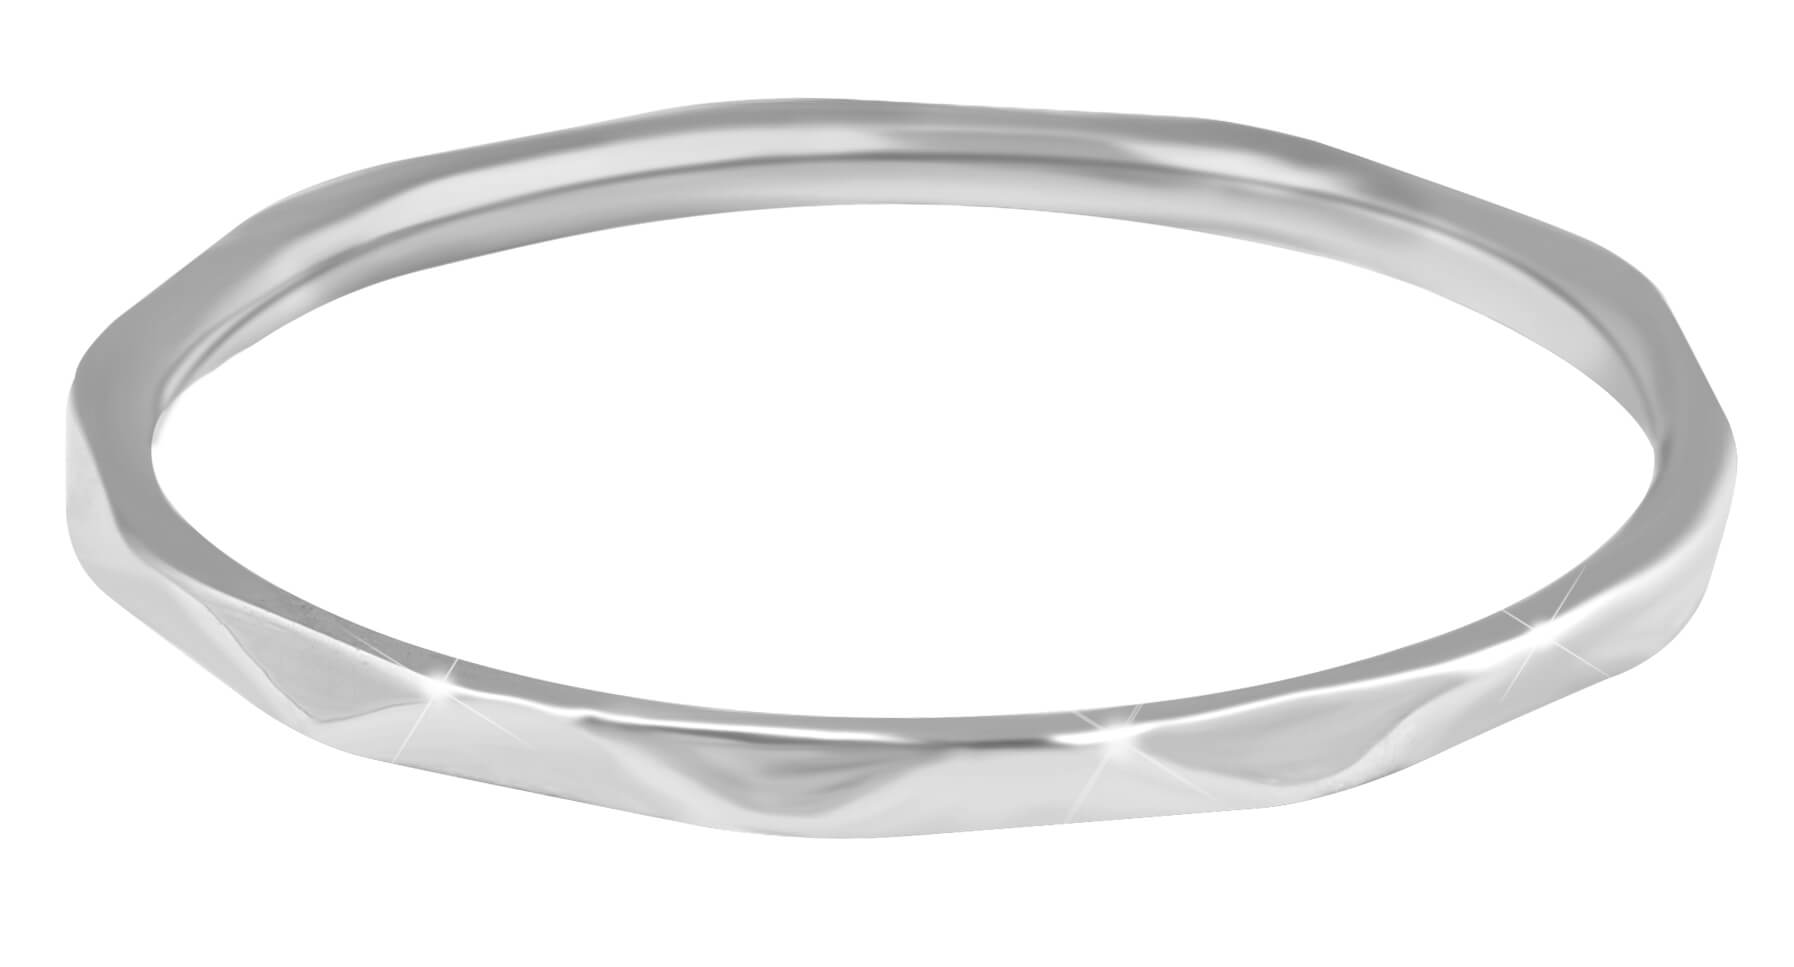 Troli Minimalistický ocelový prsten s jemným designem Silver 58 mm